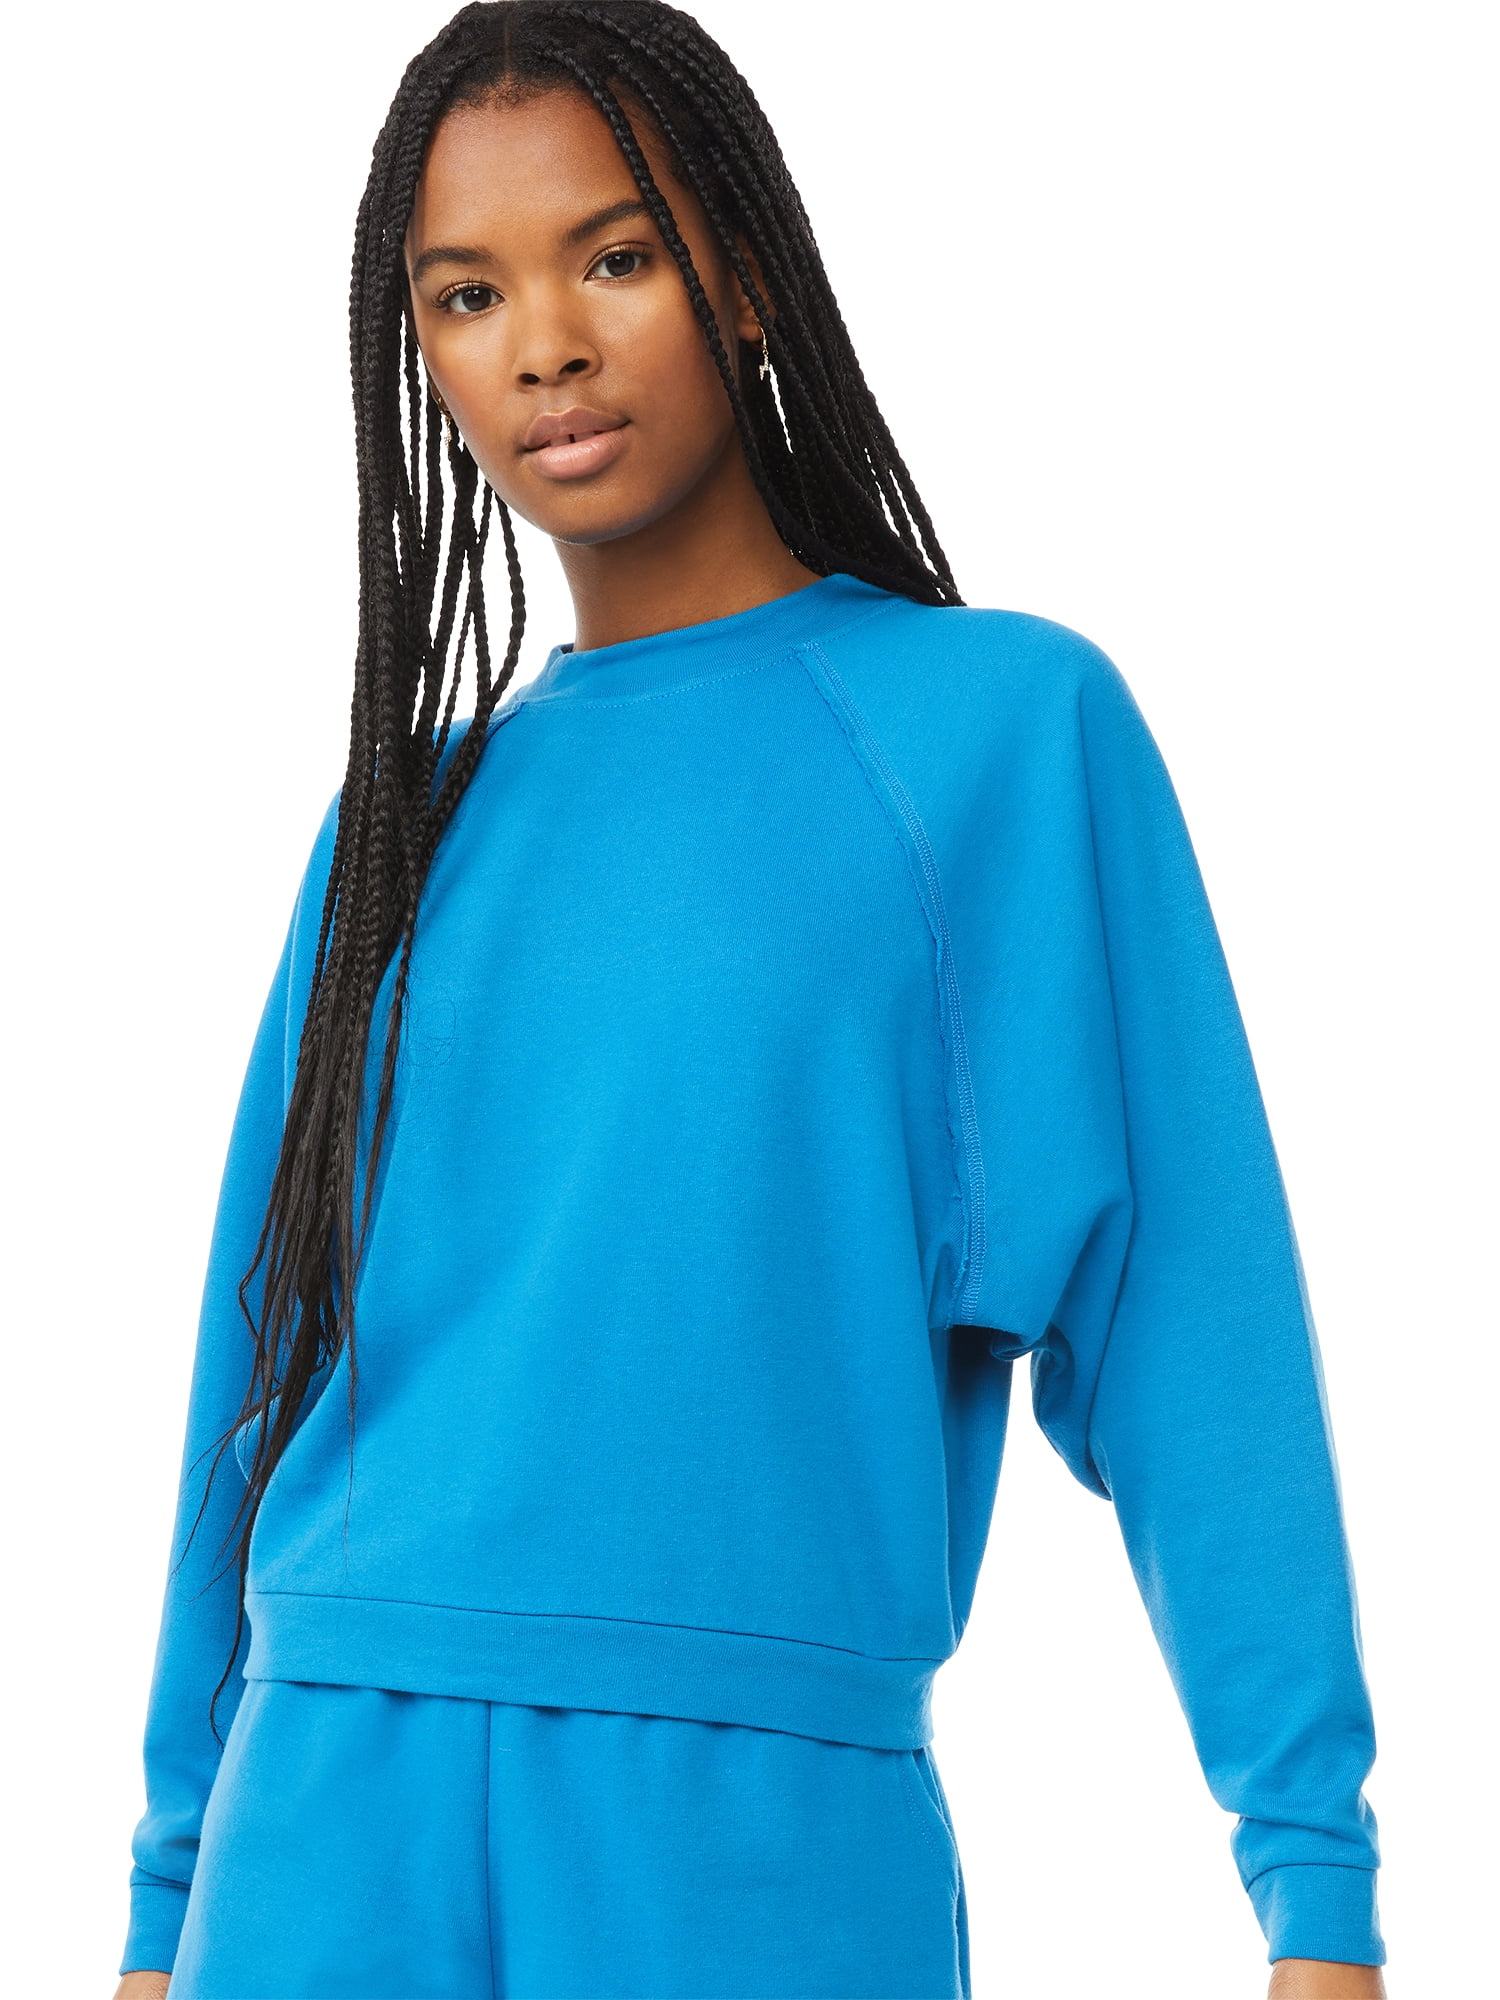 Scoop Women's Raglan Sweatshirt - Walmart.com